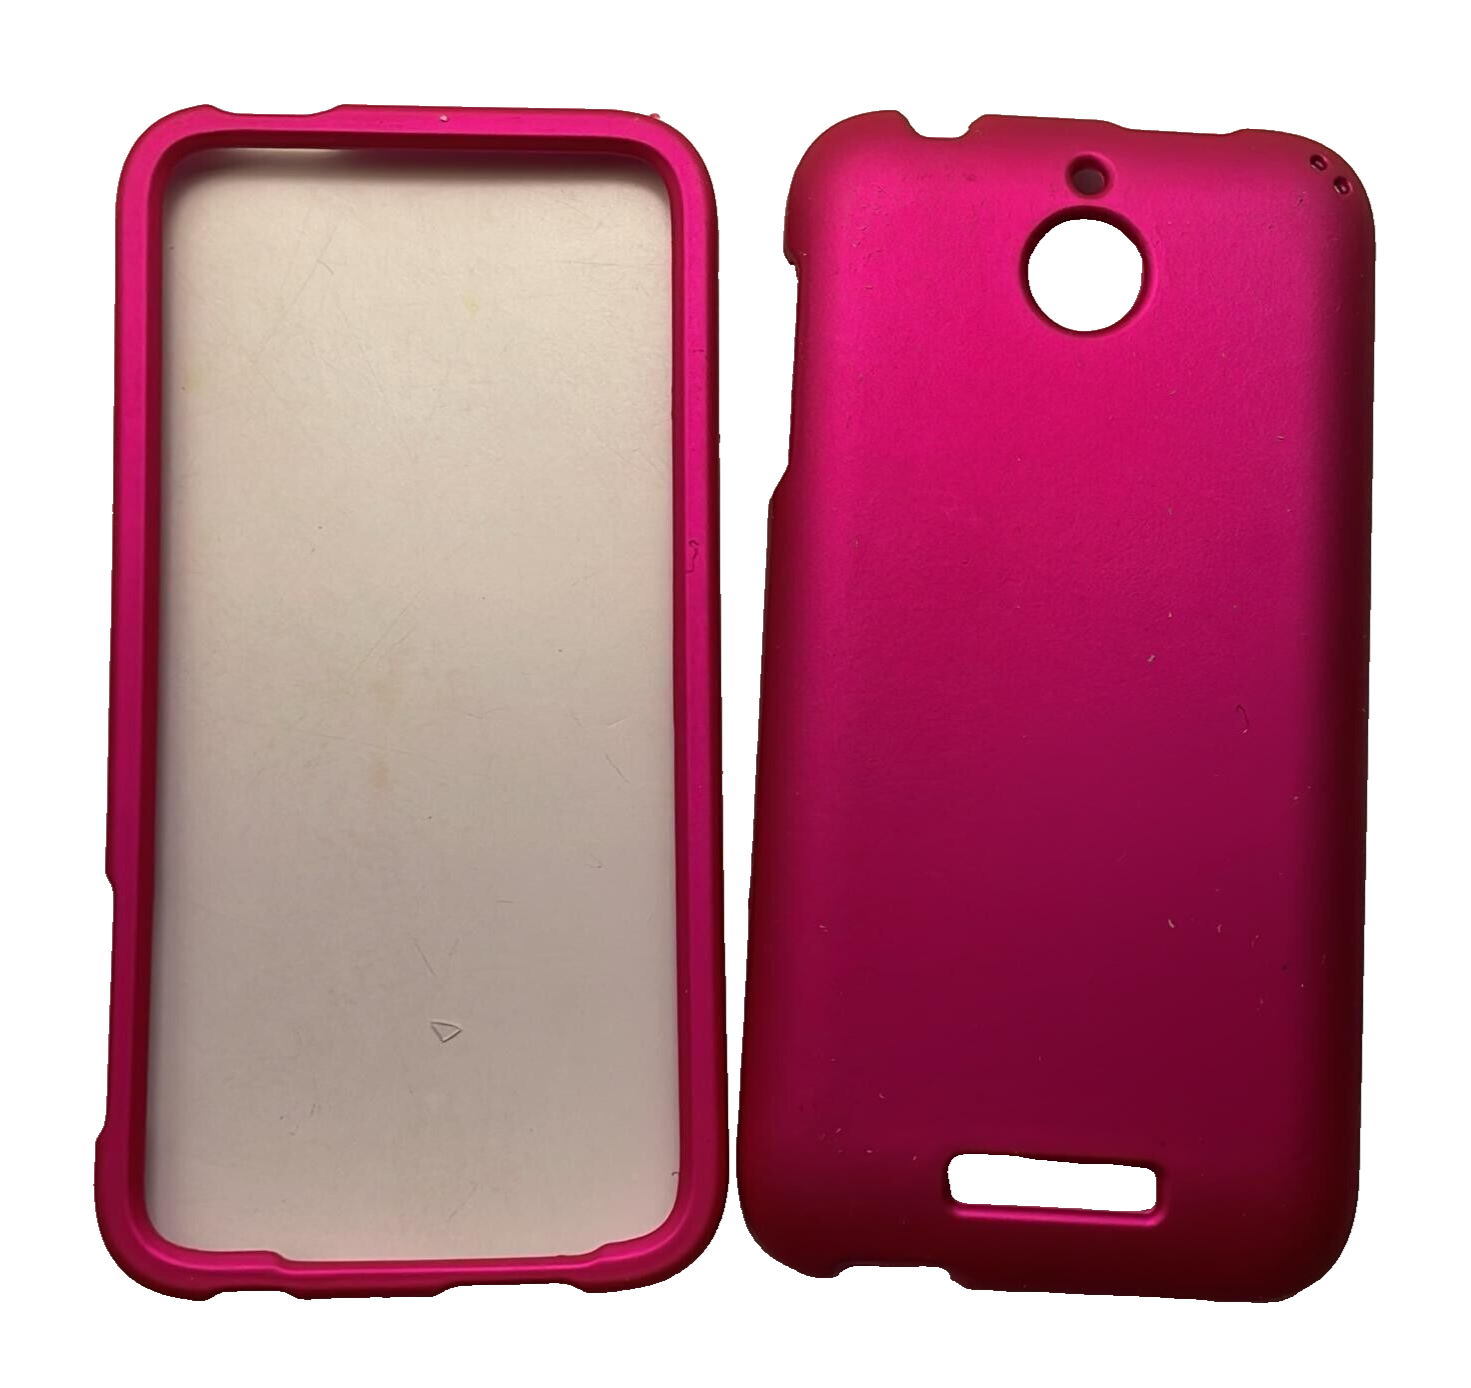 Sonne Premium Case for HTC Desire 510, Pink Sonne - фотография #3